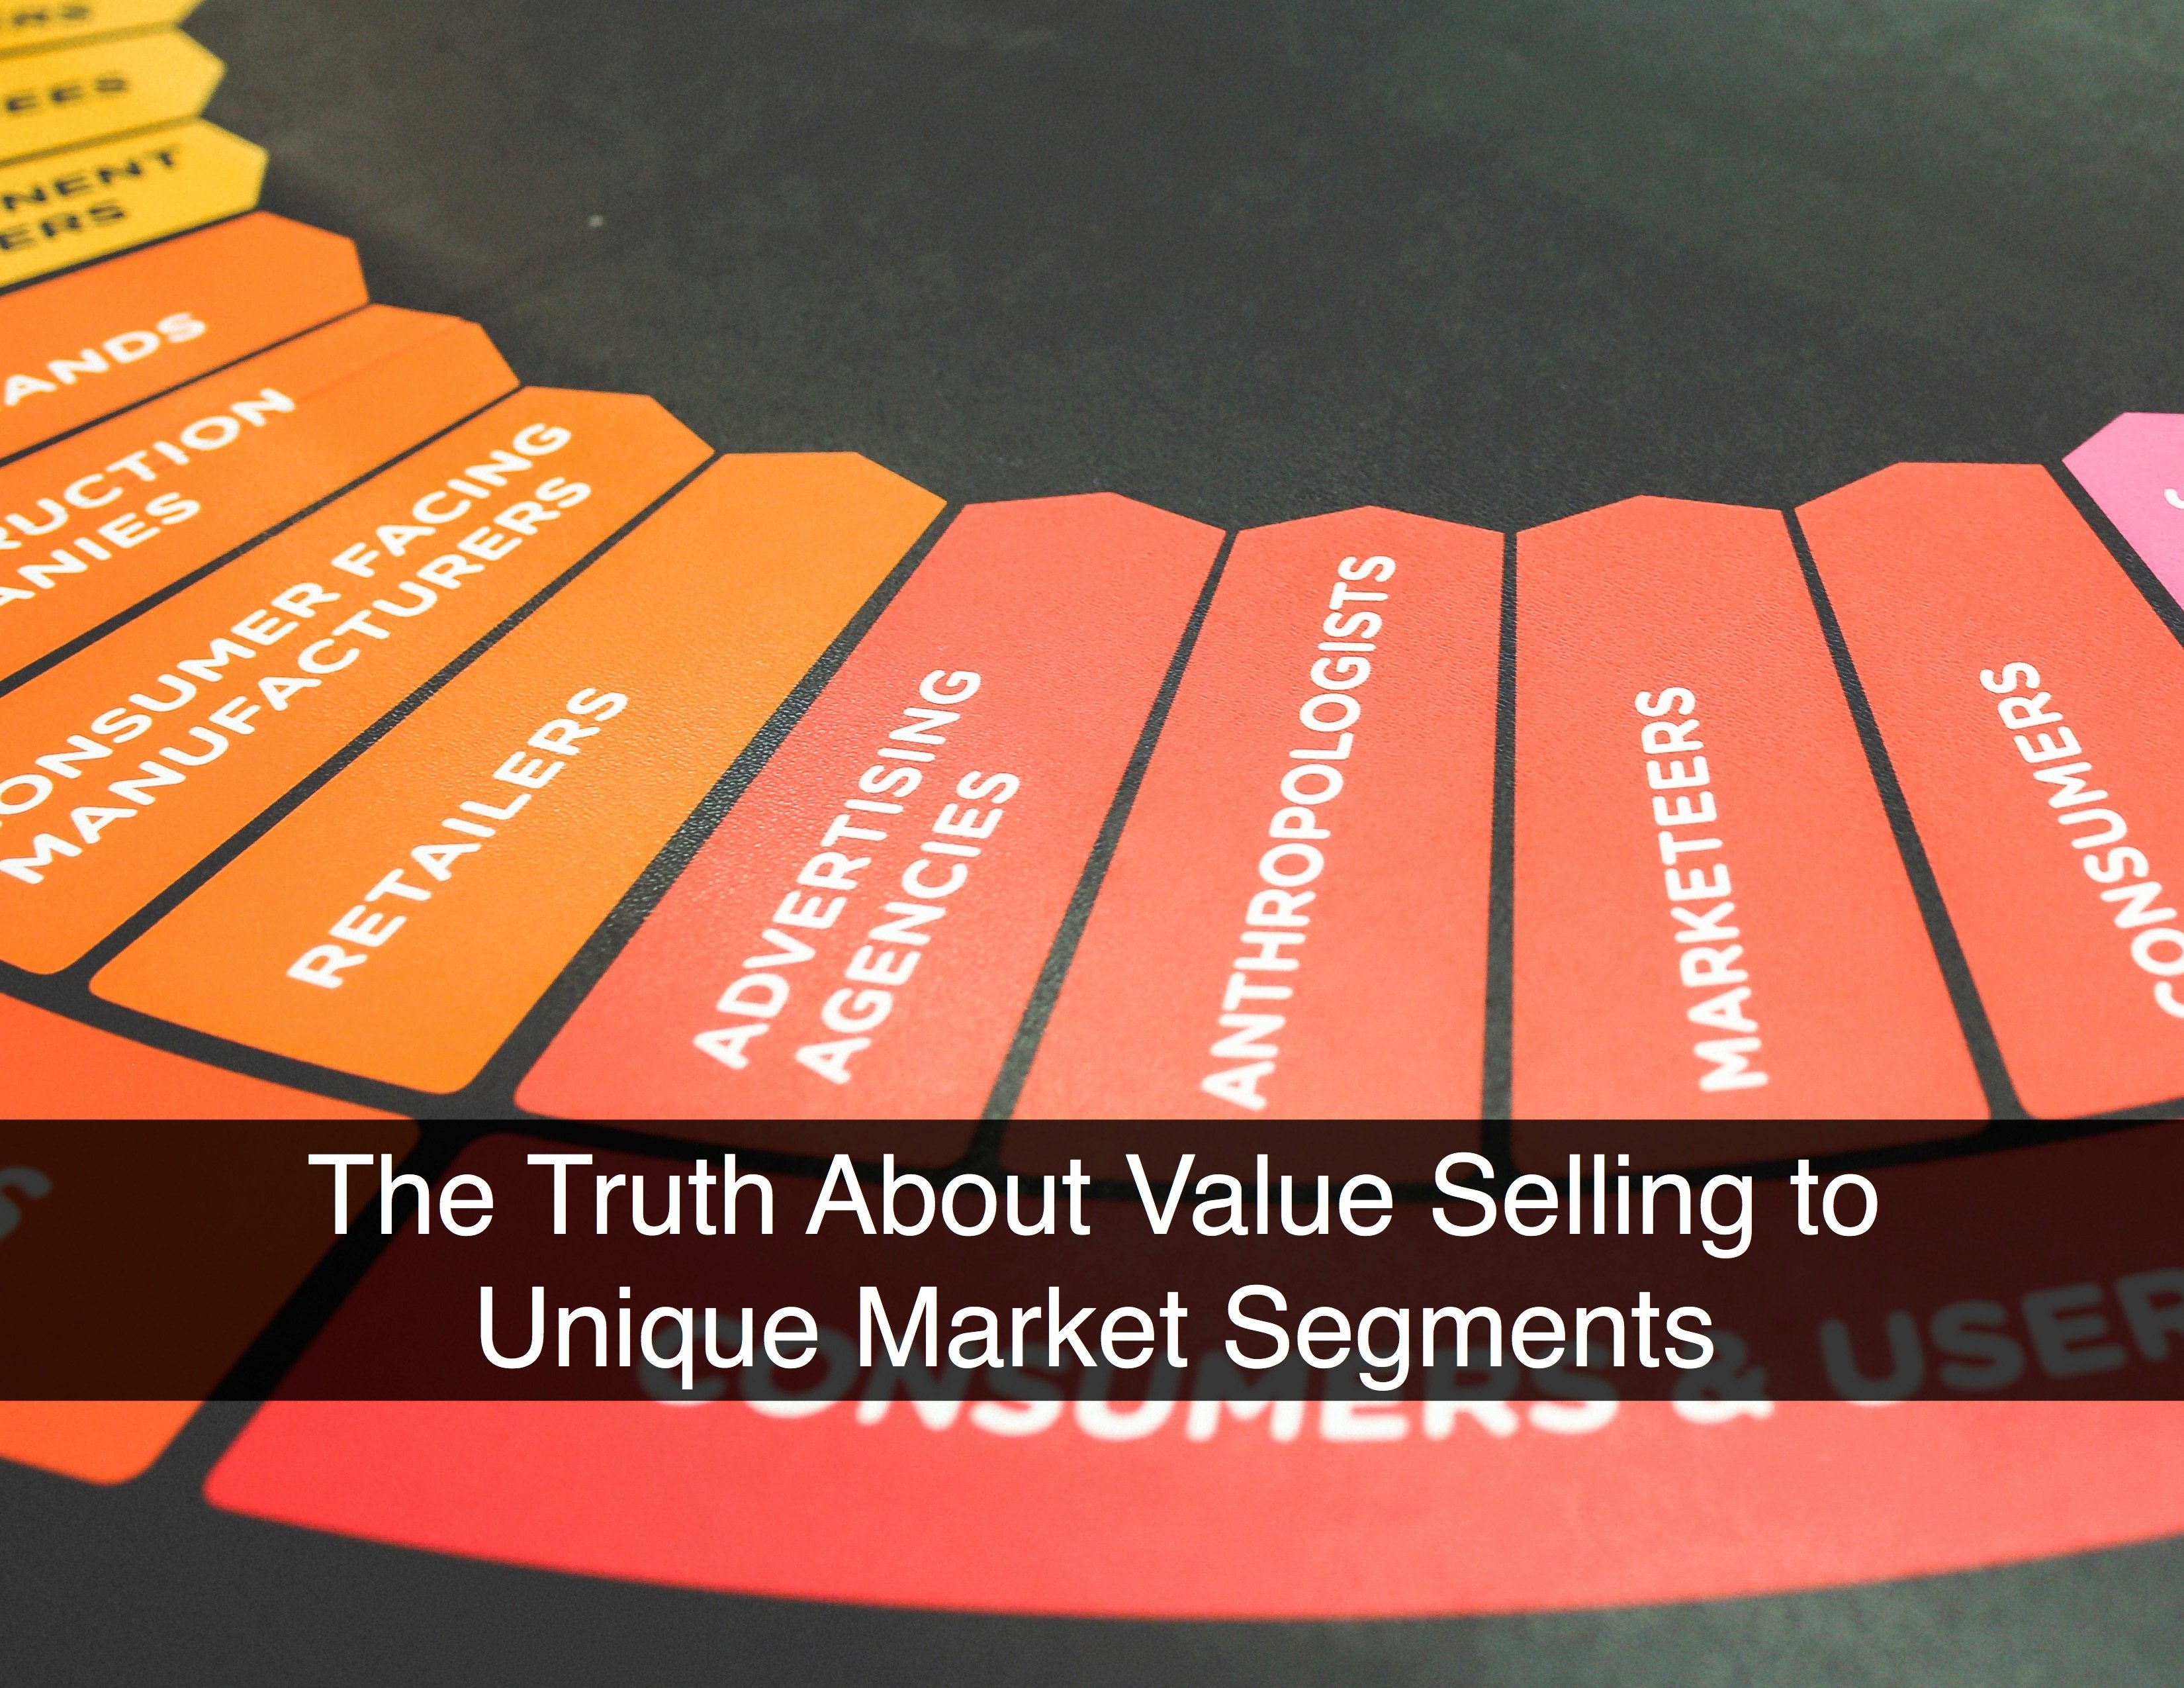 Value Selling in Unique Market Segments